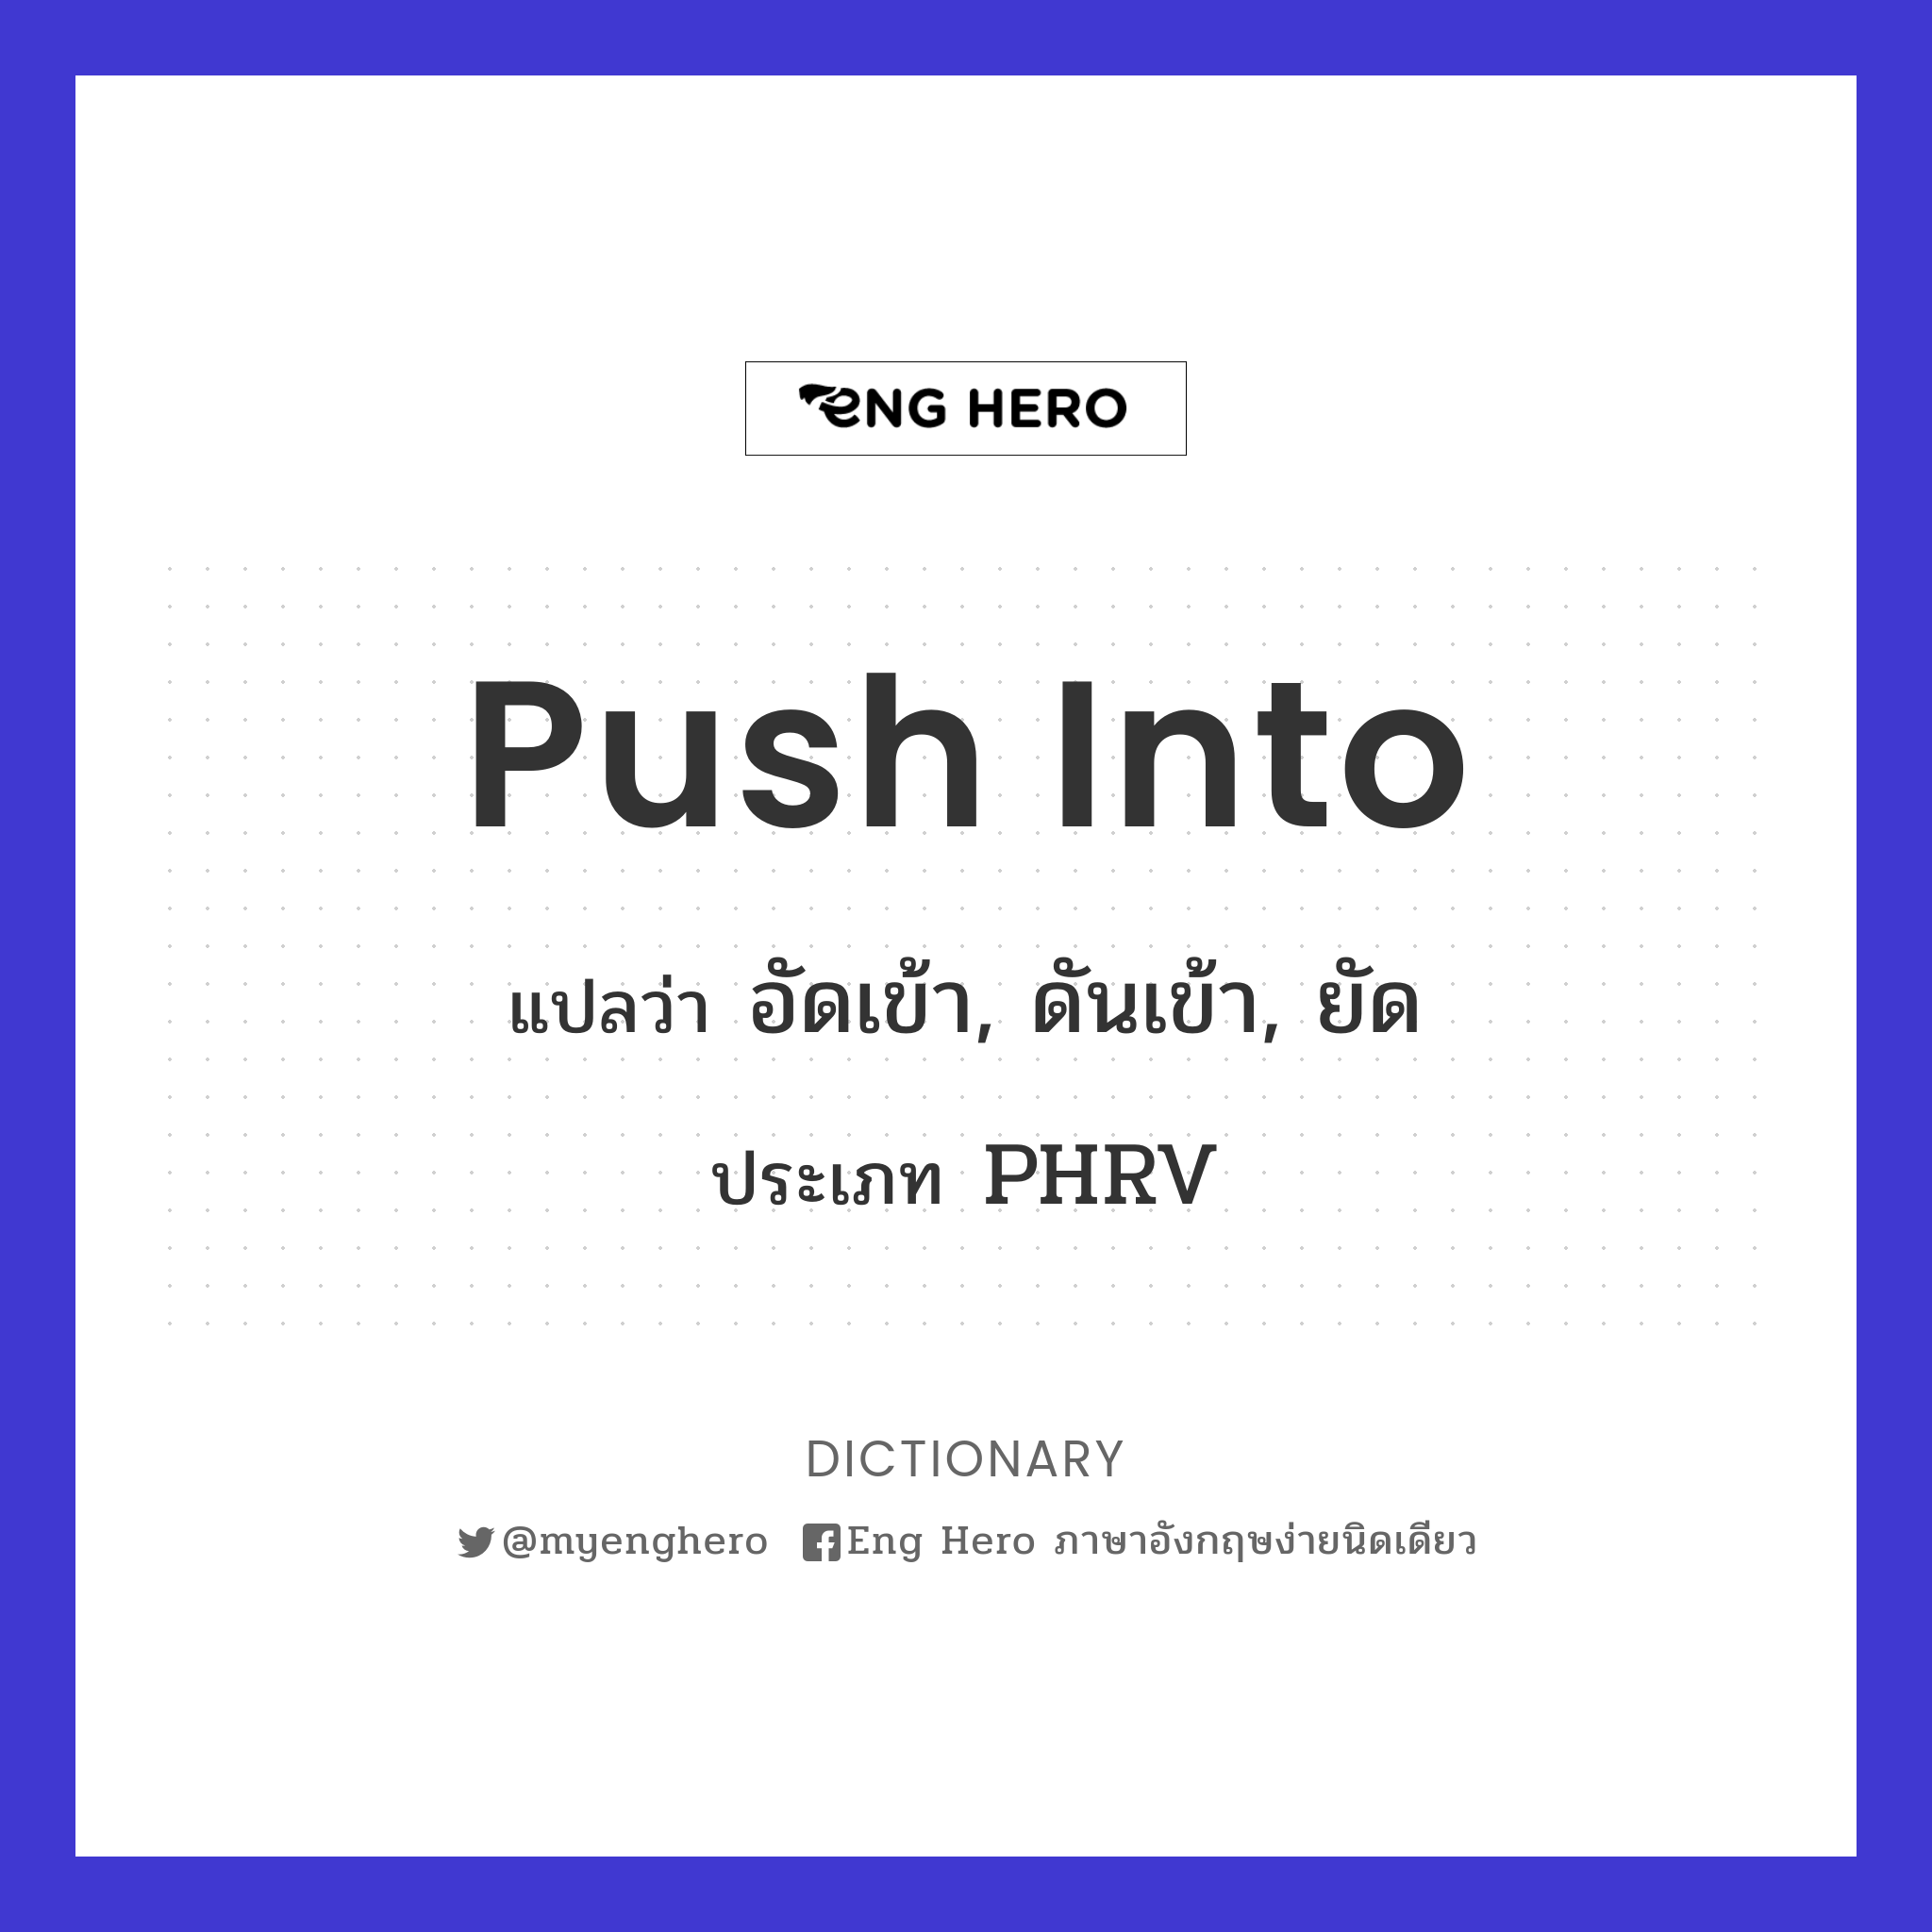 push into